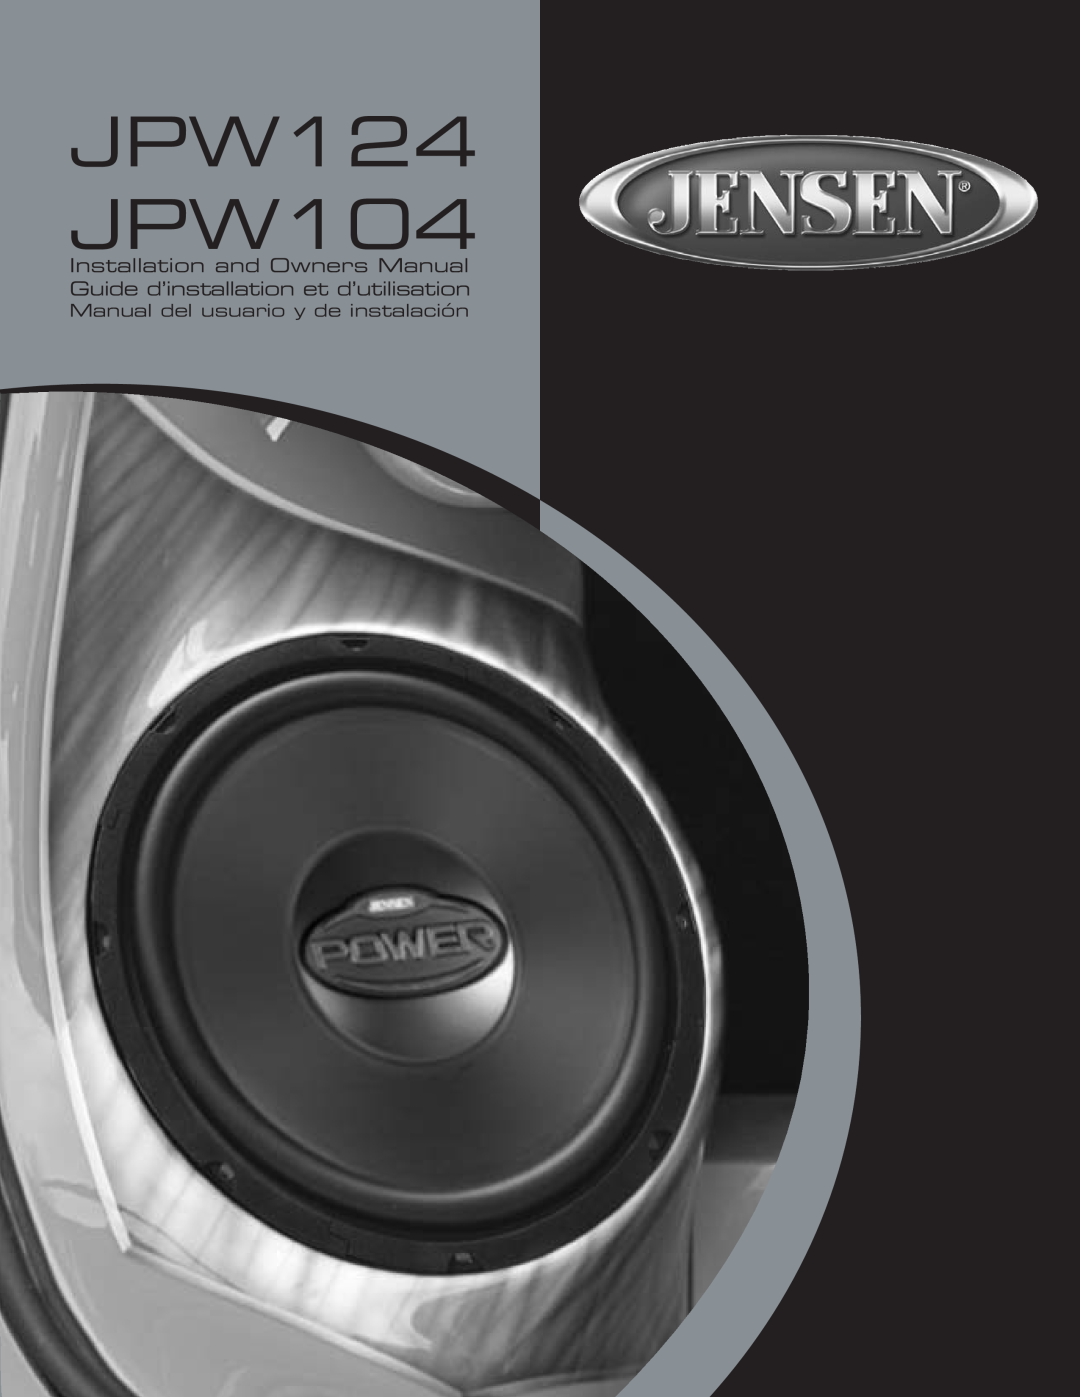 Audiovox owner manual Manual del usuario y de instalación, JPW124 JPW104 